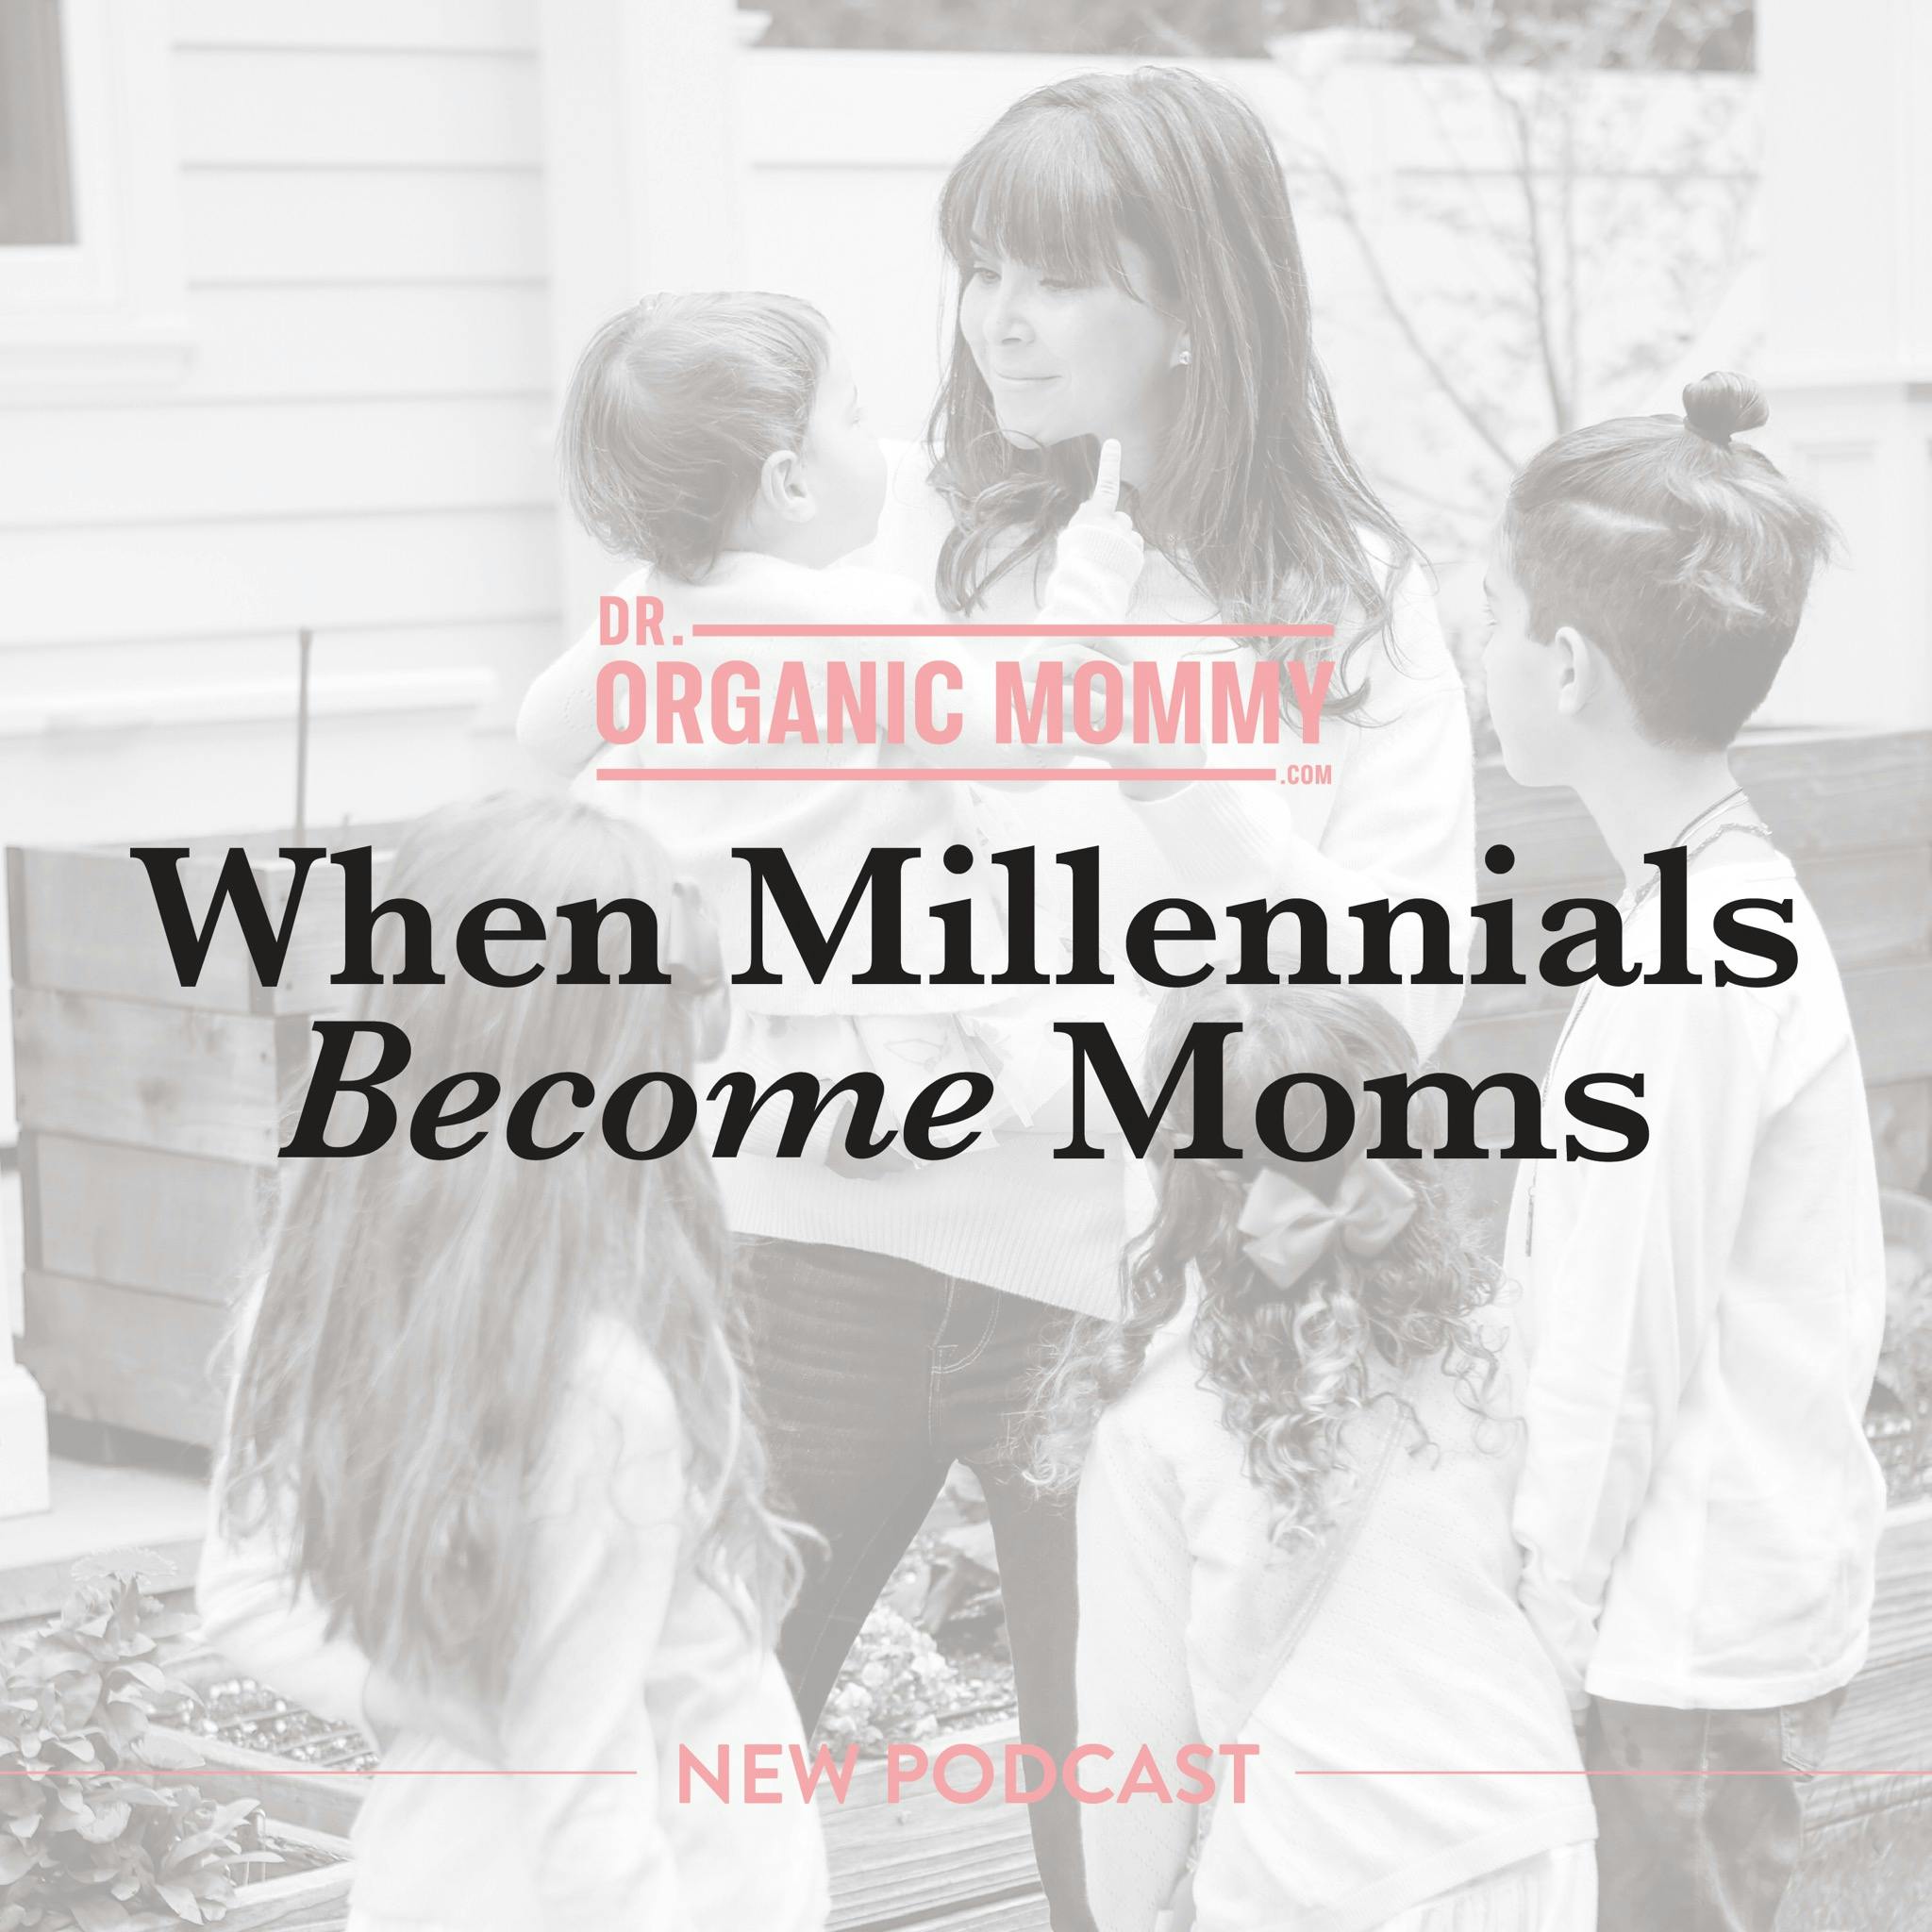 When Millennials Become Moms